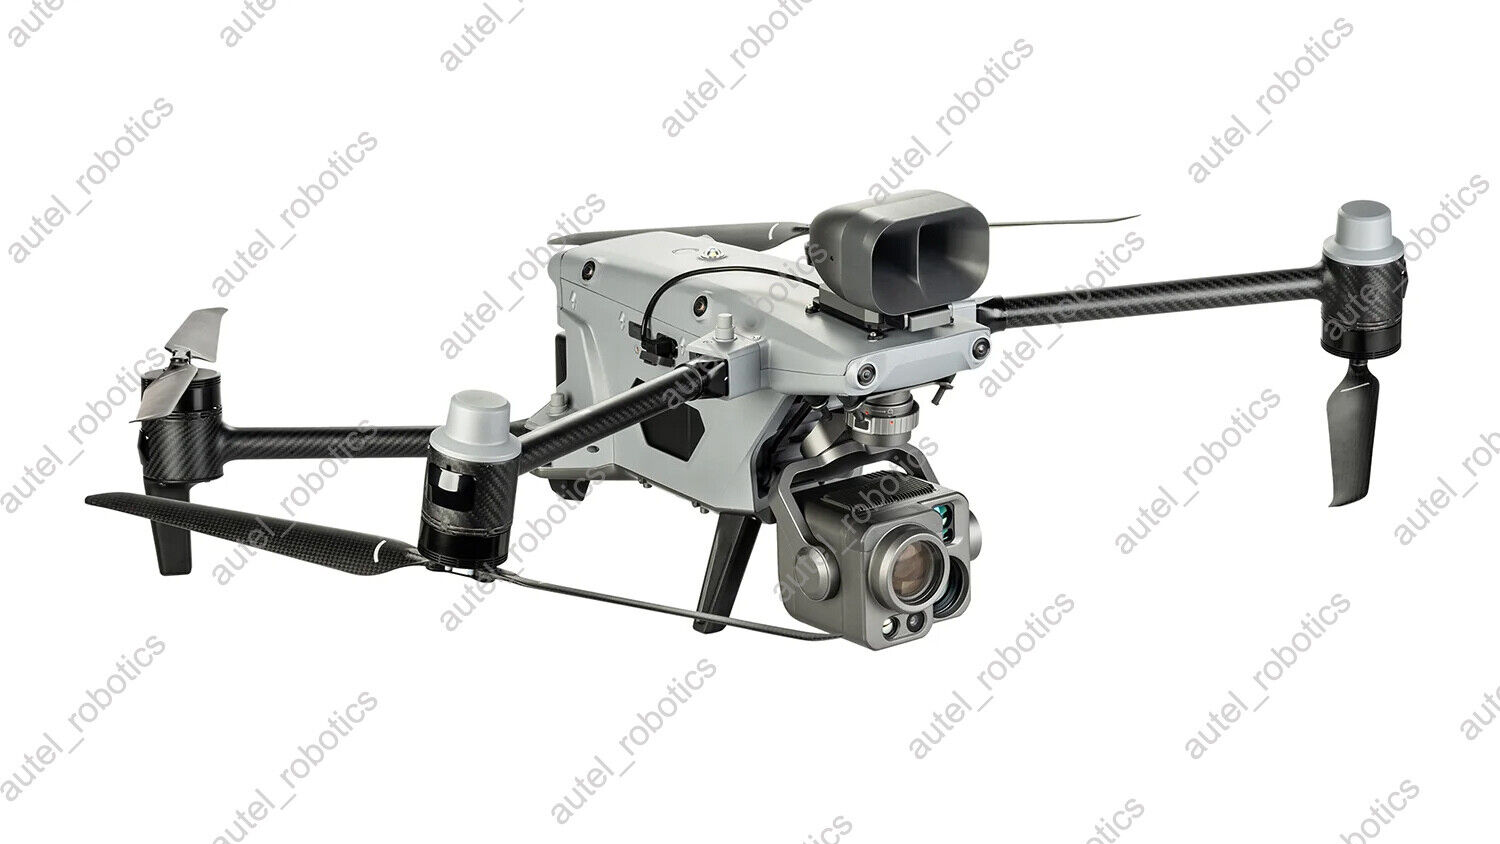 Autel Alpha enterprise drone